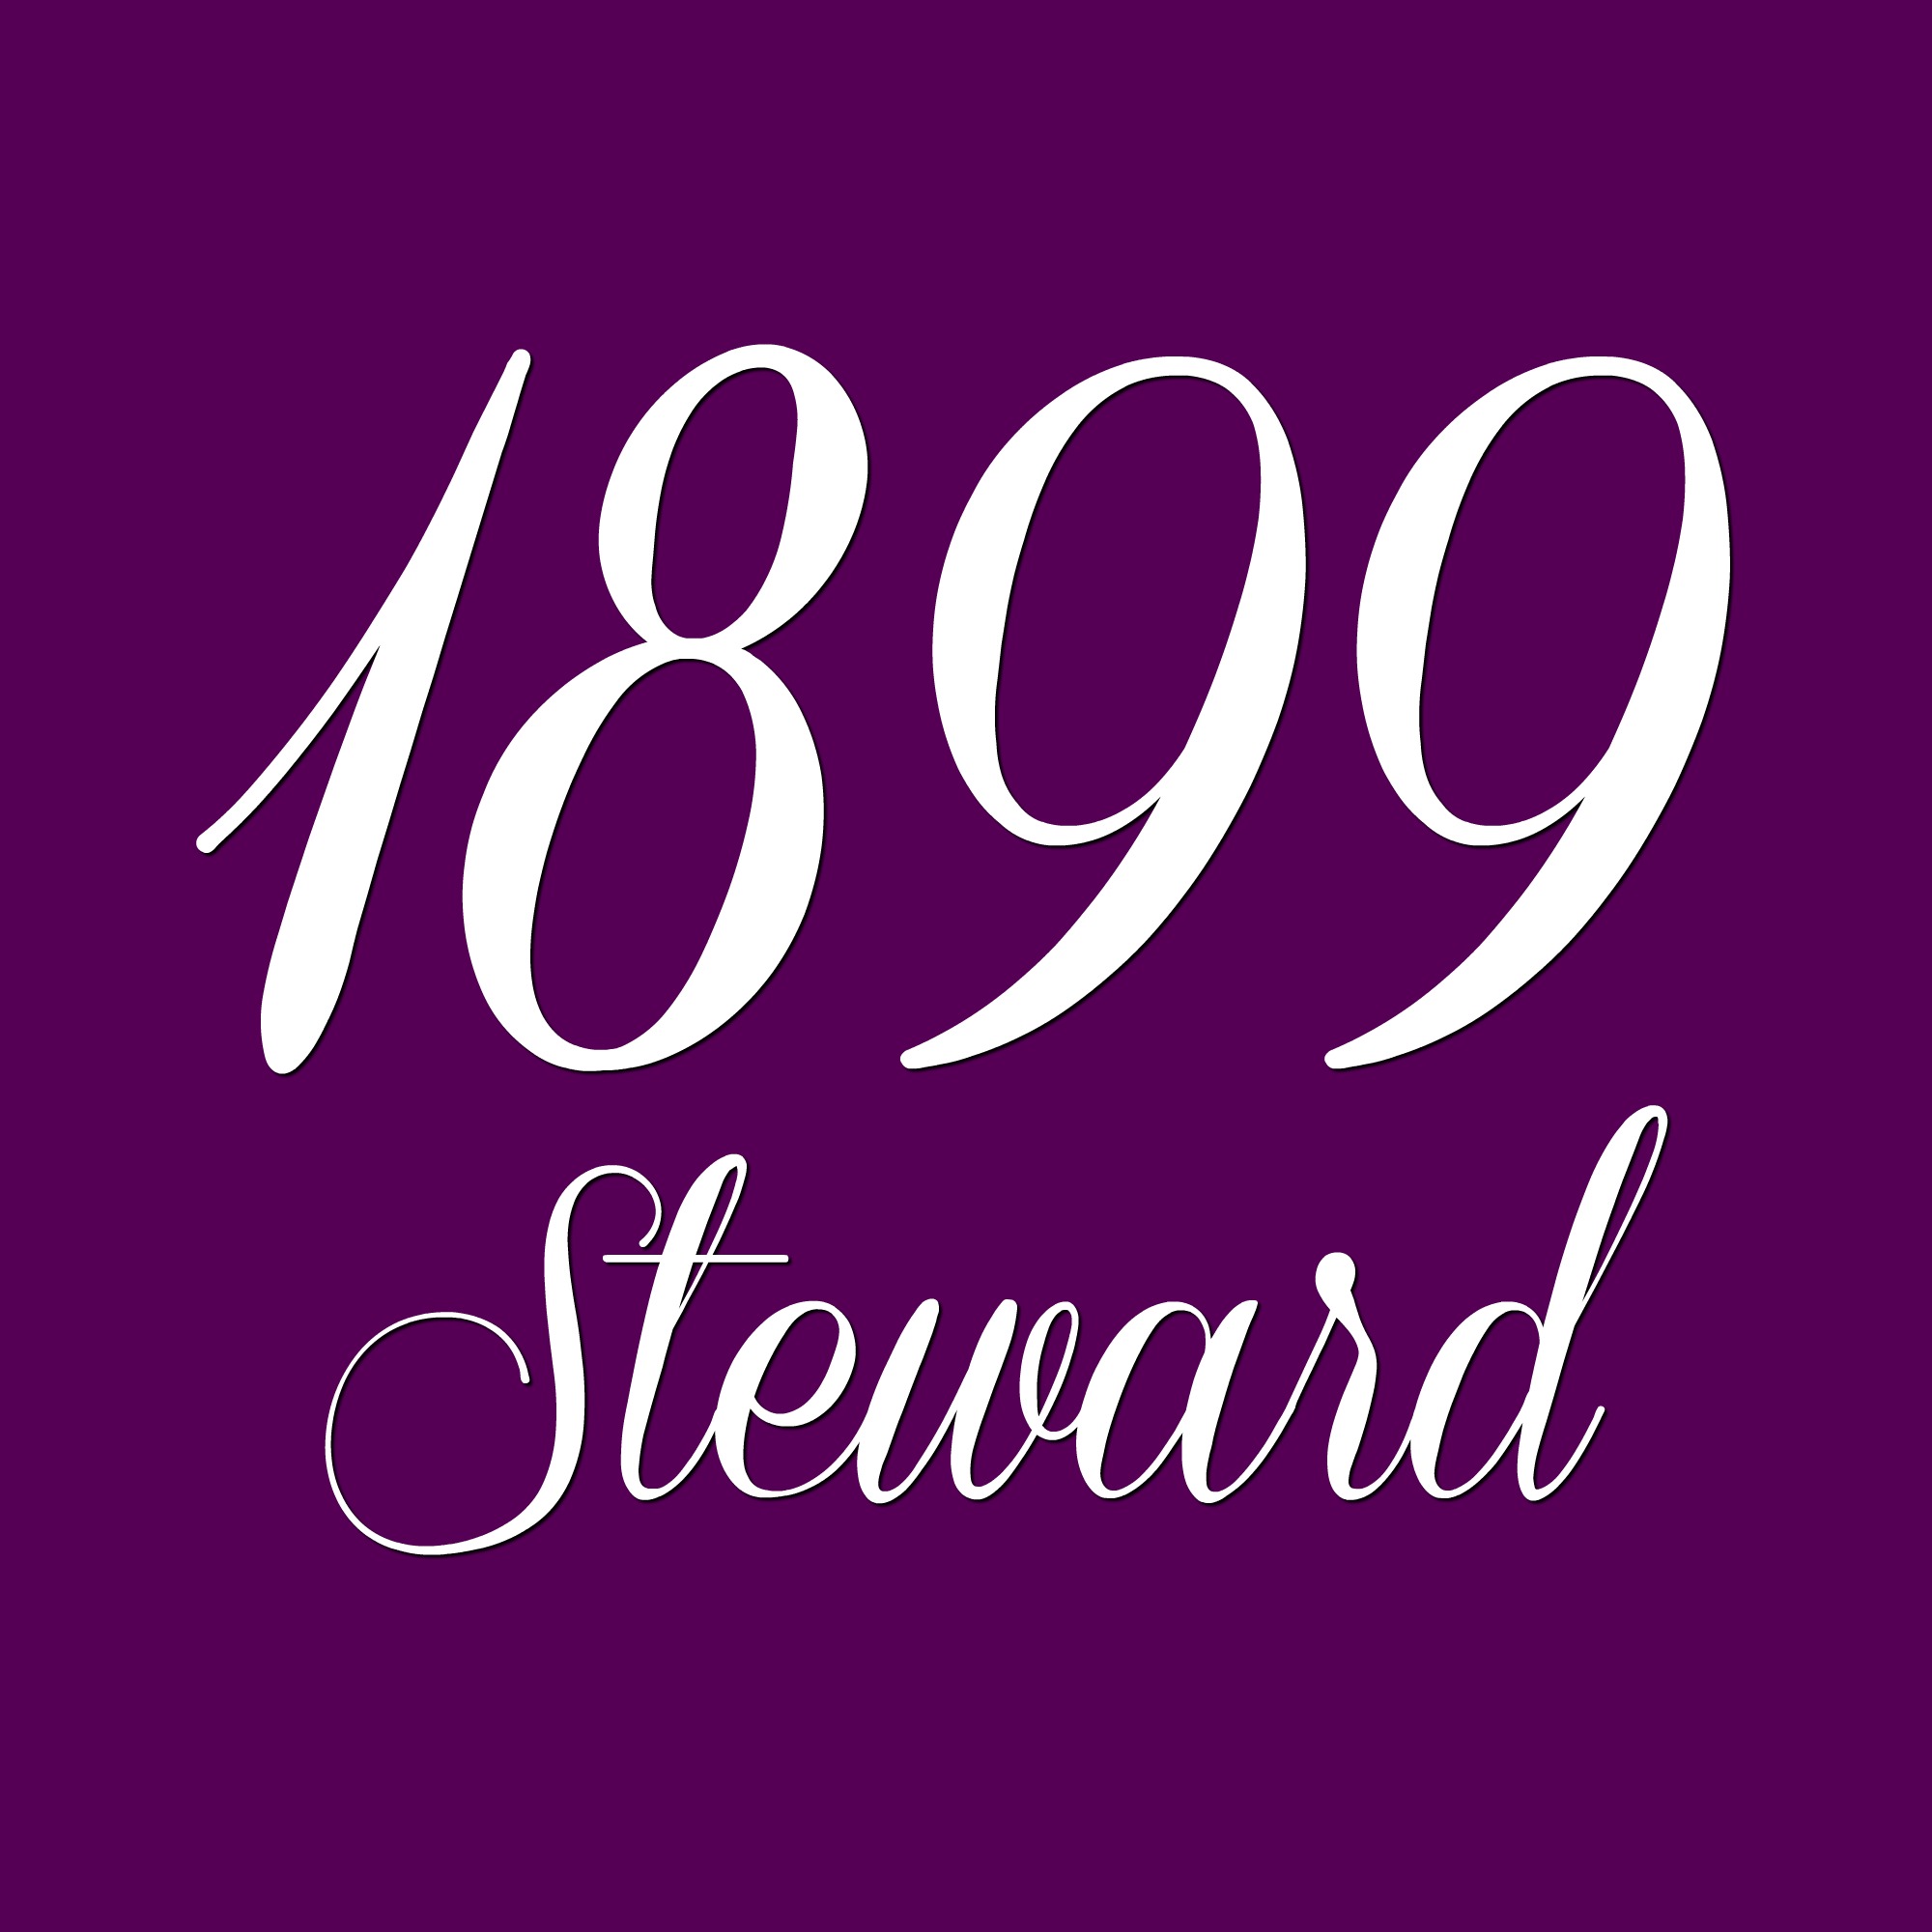 1899 Steward